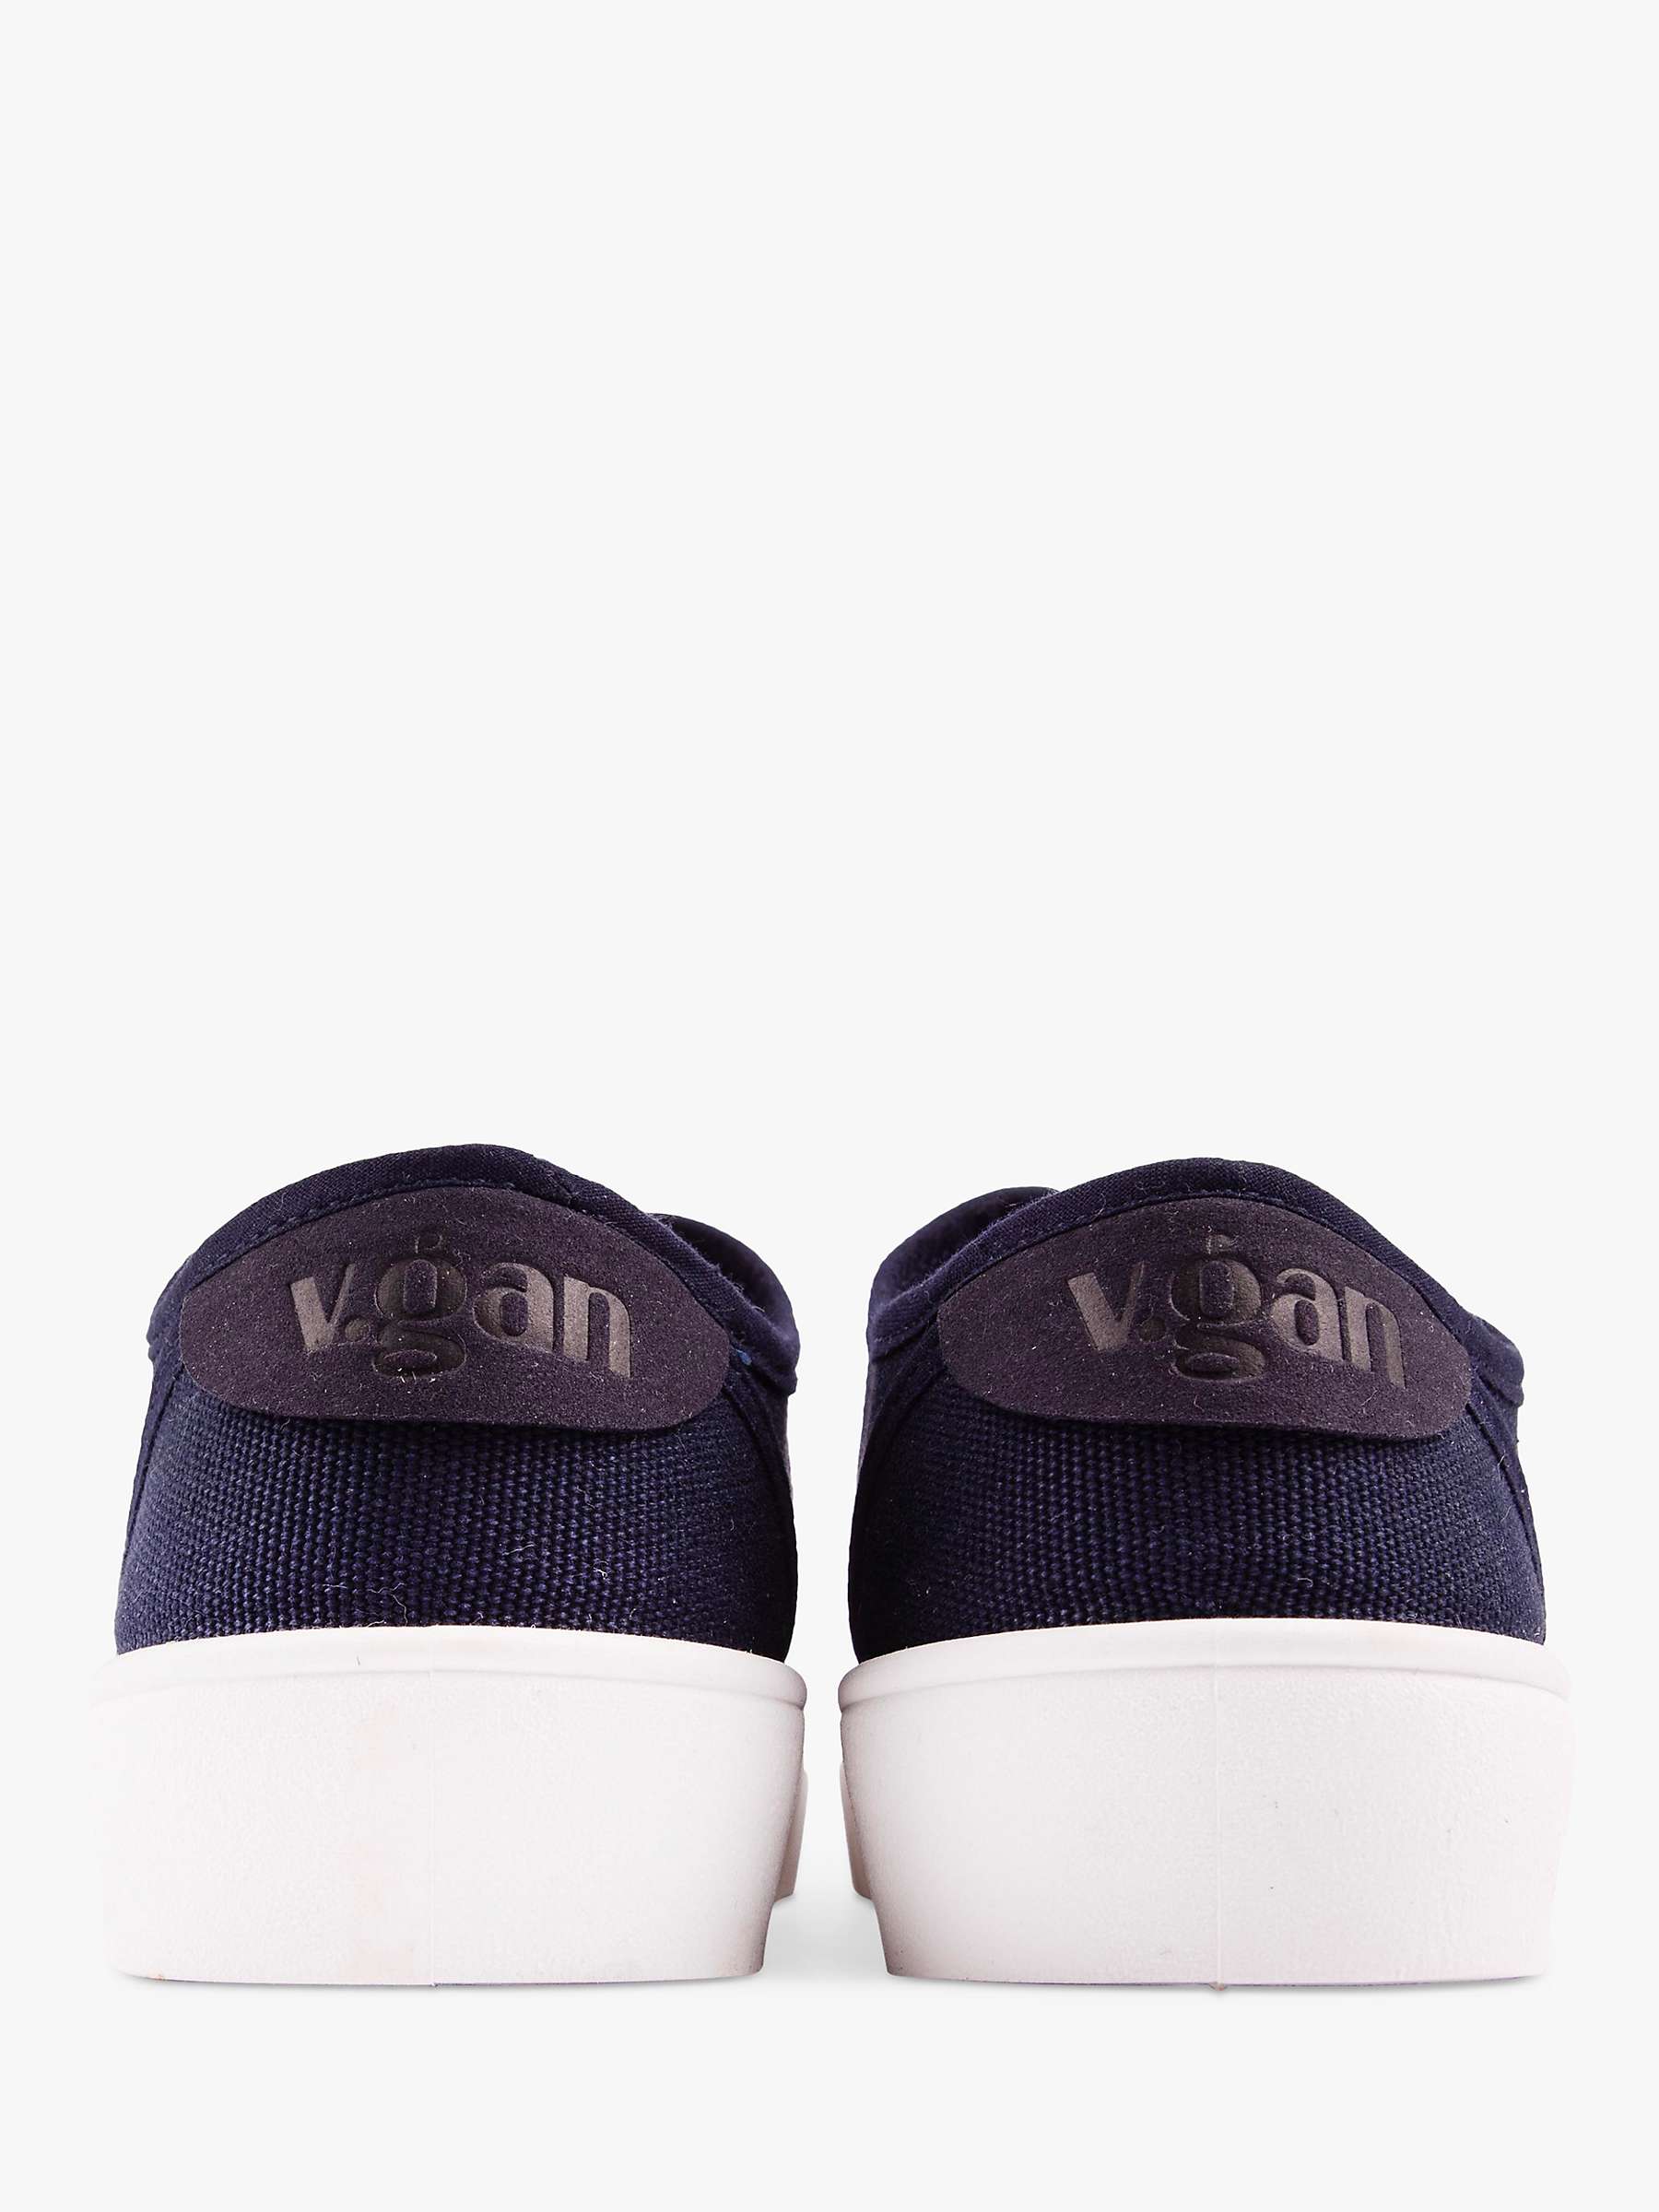 Buy V.GAN Vegan Olive Lace Up Pumps Online at johnlewis.com